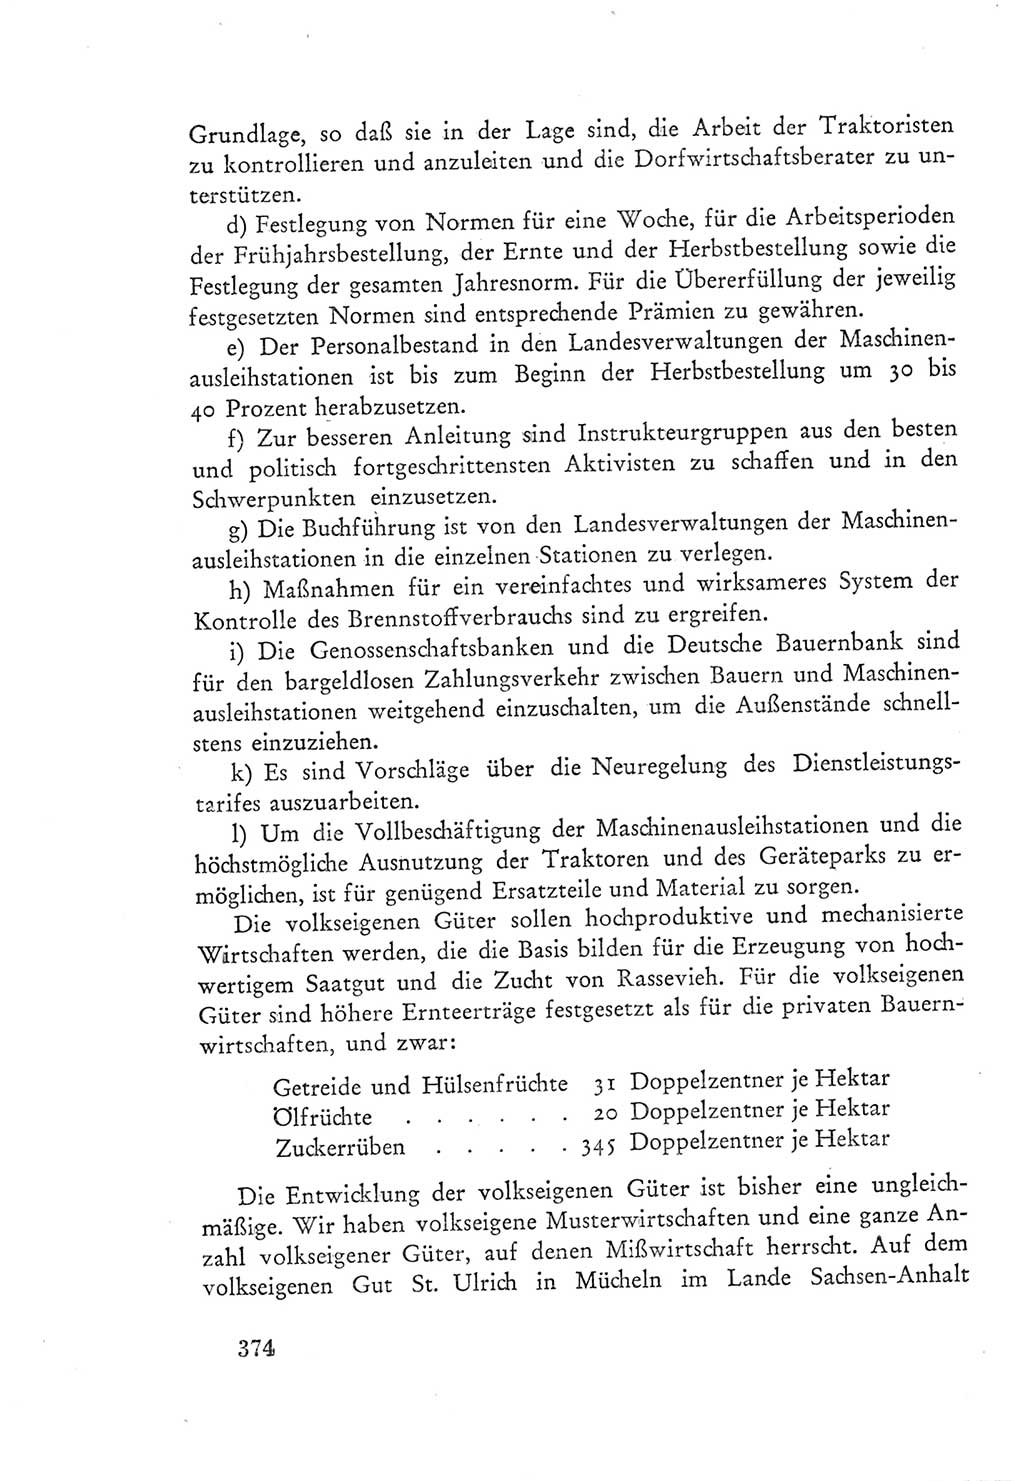 Protokoll der Verhandlungen des Ⅲ. Parteitages der Sozialistischen Einheitspartei Deutschlands (SED) [Deutsche Demokratische Republik (DDR)] 1950, Band 1, Seite 374 (Prot. Verh. Ⅲ. PT SED DDR 1950, Bd. 1, S. 374)